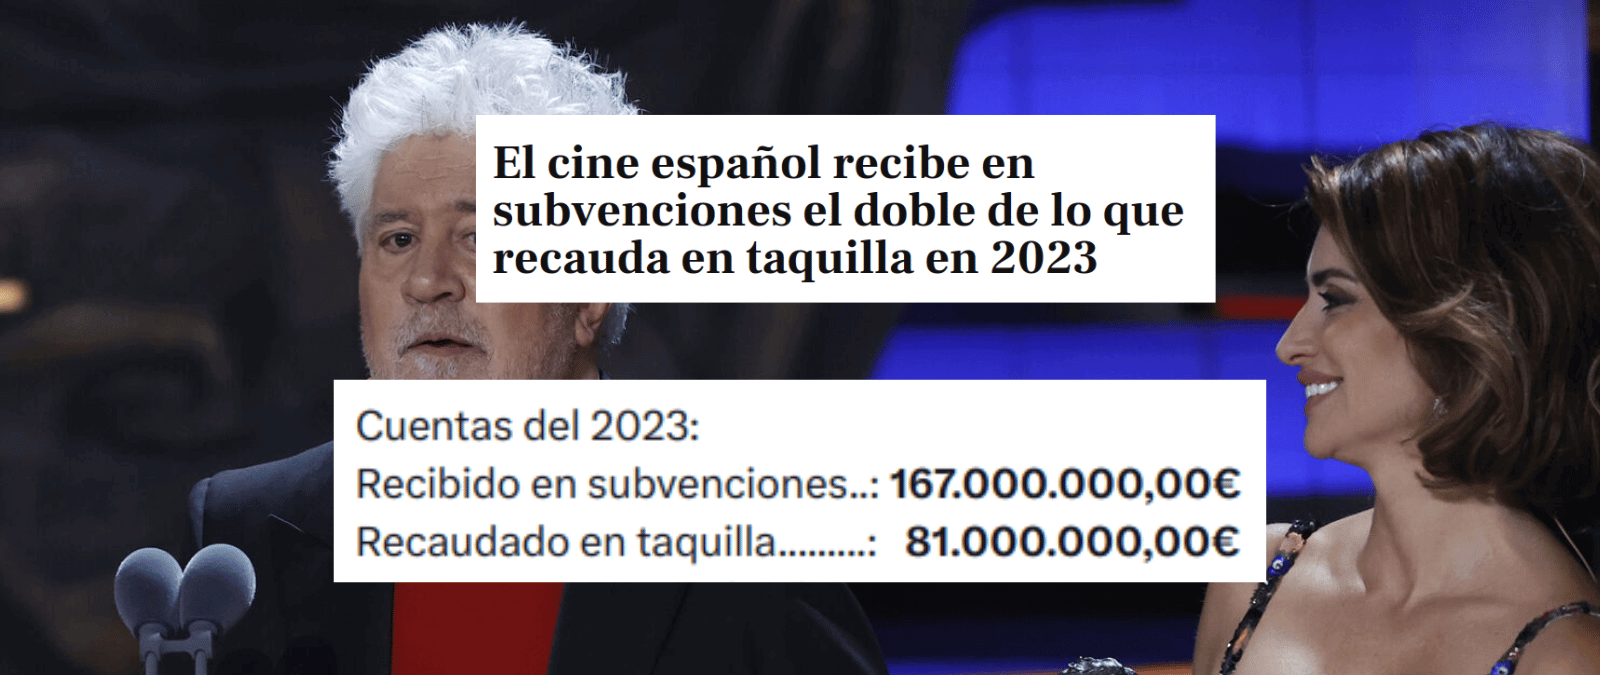 El cine español: datos de los ingresos y las subvenciones que ha recibido en los últimos años